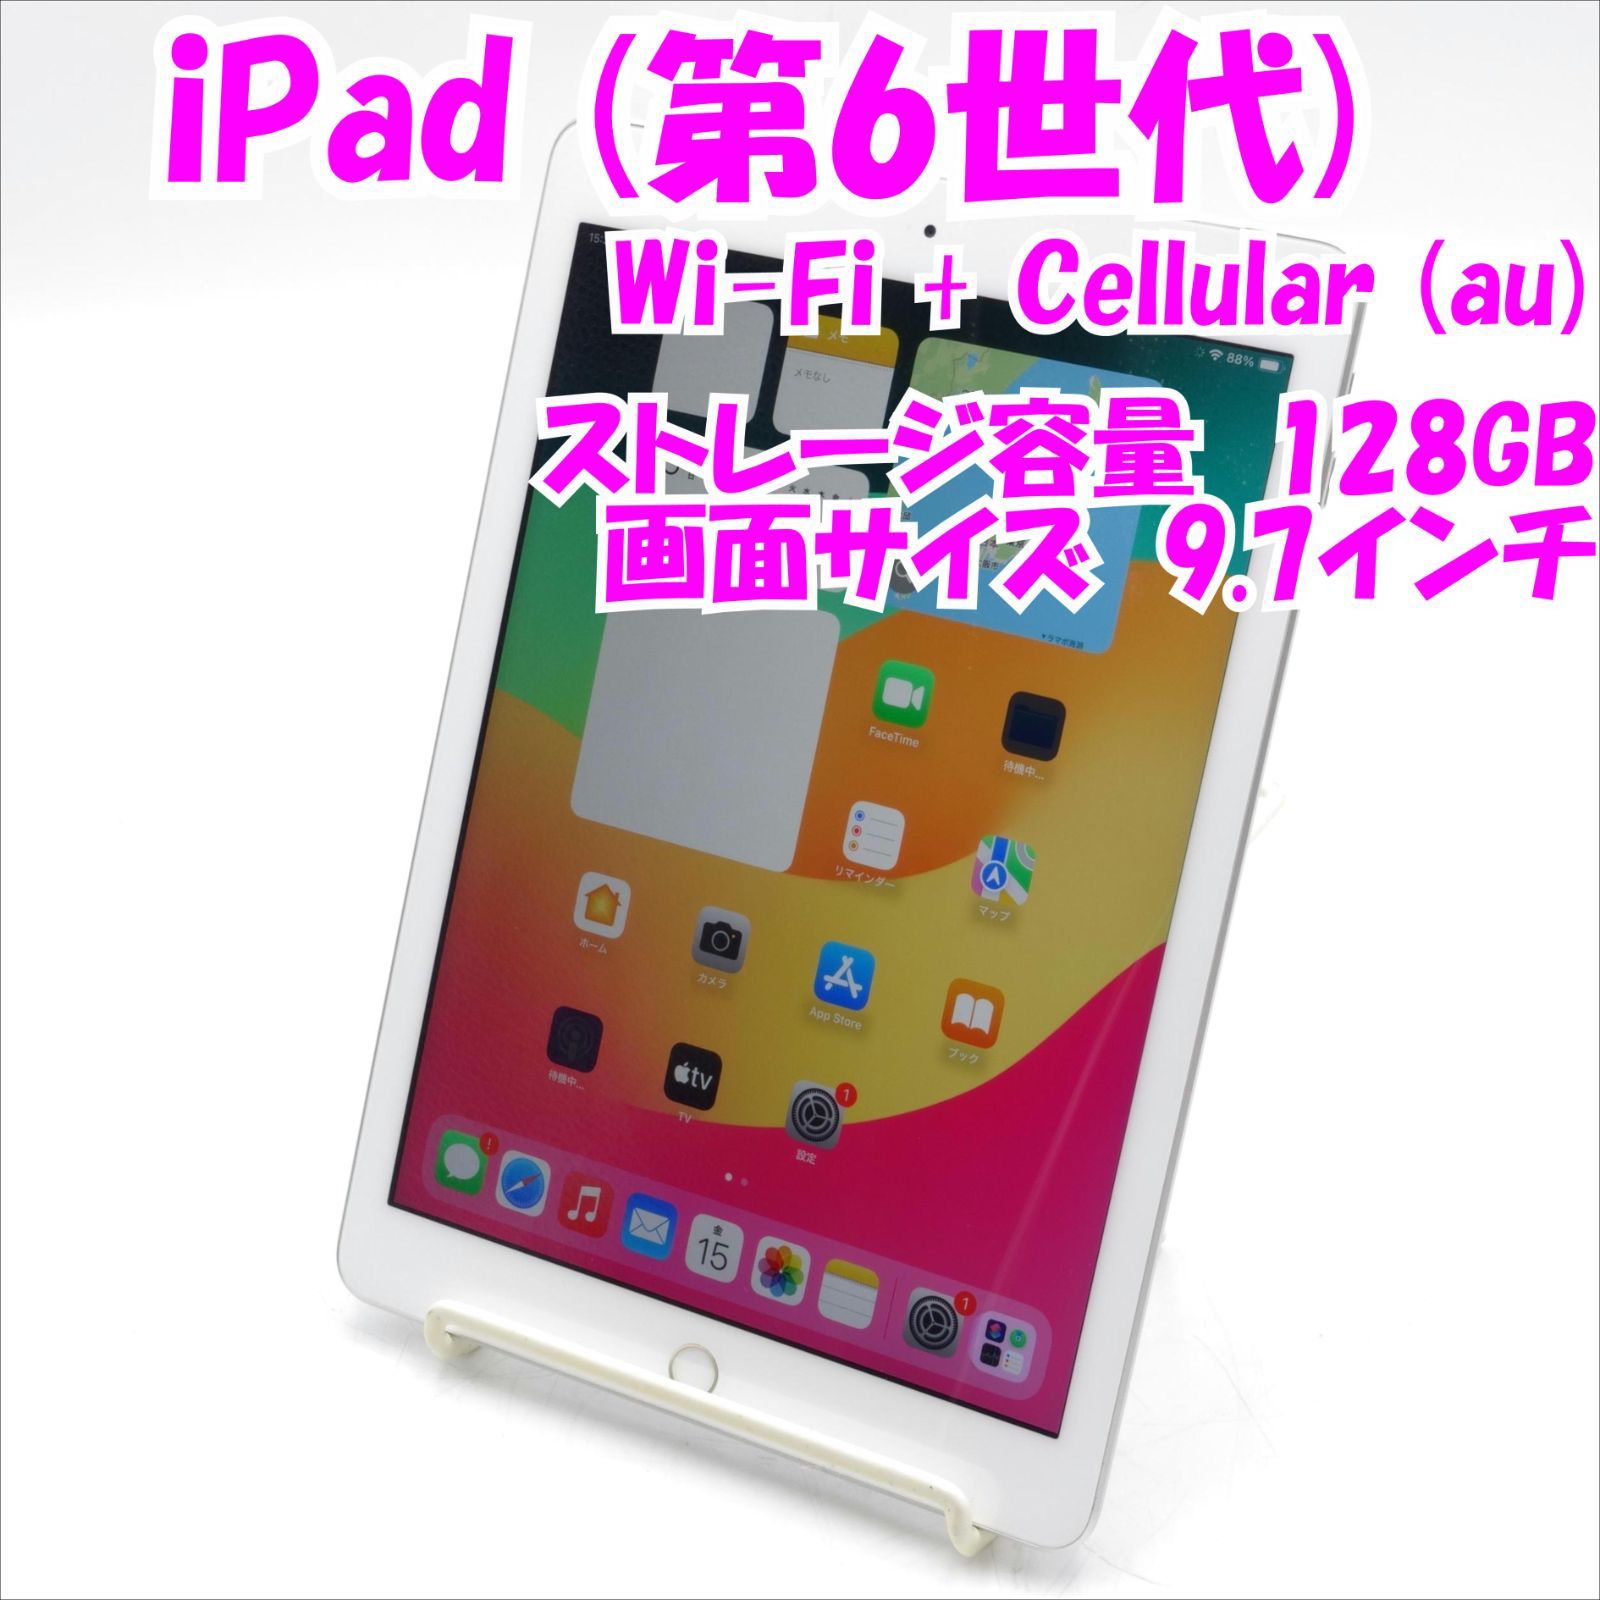 中古品】iPad (第6世代) Wi-Fi + Cellular (au) 128GB /MR732J/A 管